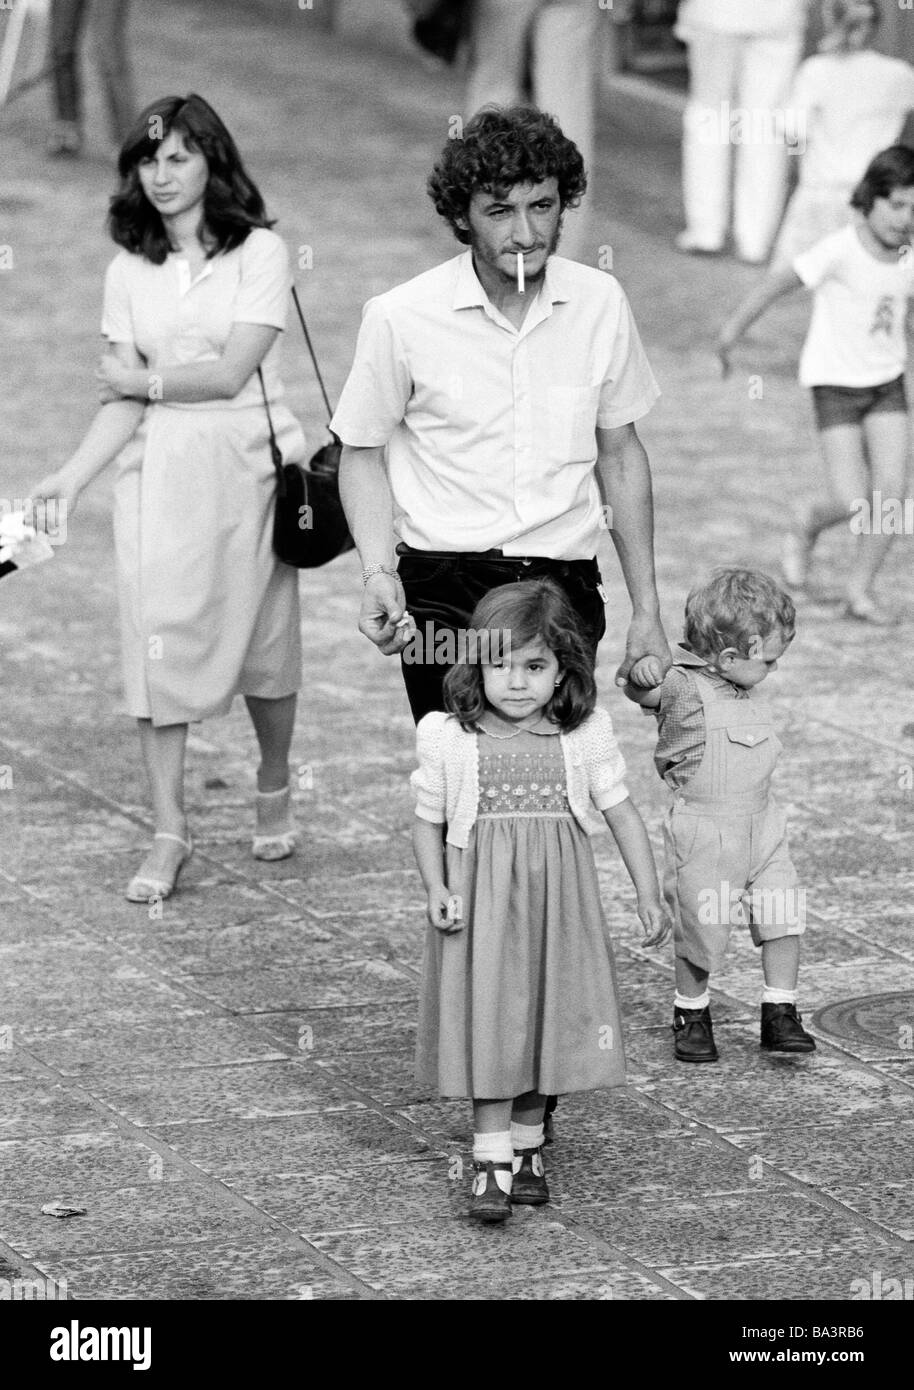 Années 1980, photo en noir et blanc, les gens, la famille, les parents prennent une marche avec la fille et le fils, les touristes, l'homme avec la cigarette, âgés de 30 à 40 ans, femme marche après, âgés de 25 à 35 ans, fille, âgés de 3 à 5 ans, garçon, âgés de 1 à 2 ans, l'Espagne, Îles Canaries, Tenerife, Puerto de la Cruz Banque D'Images